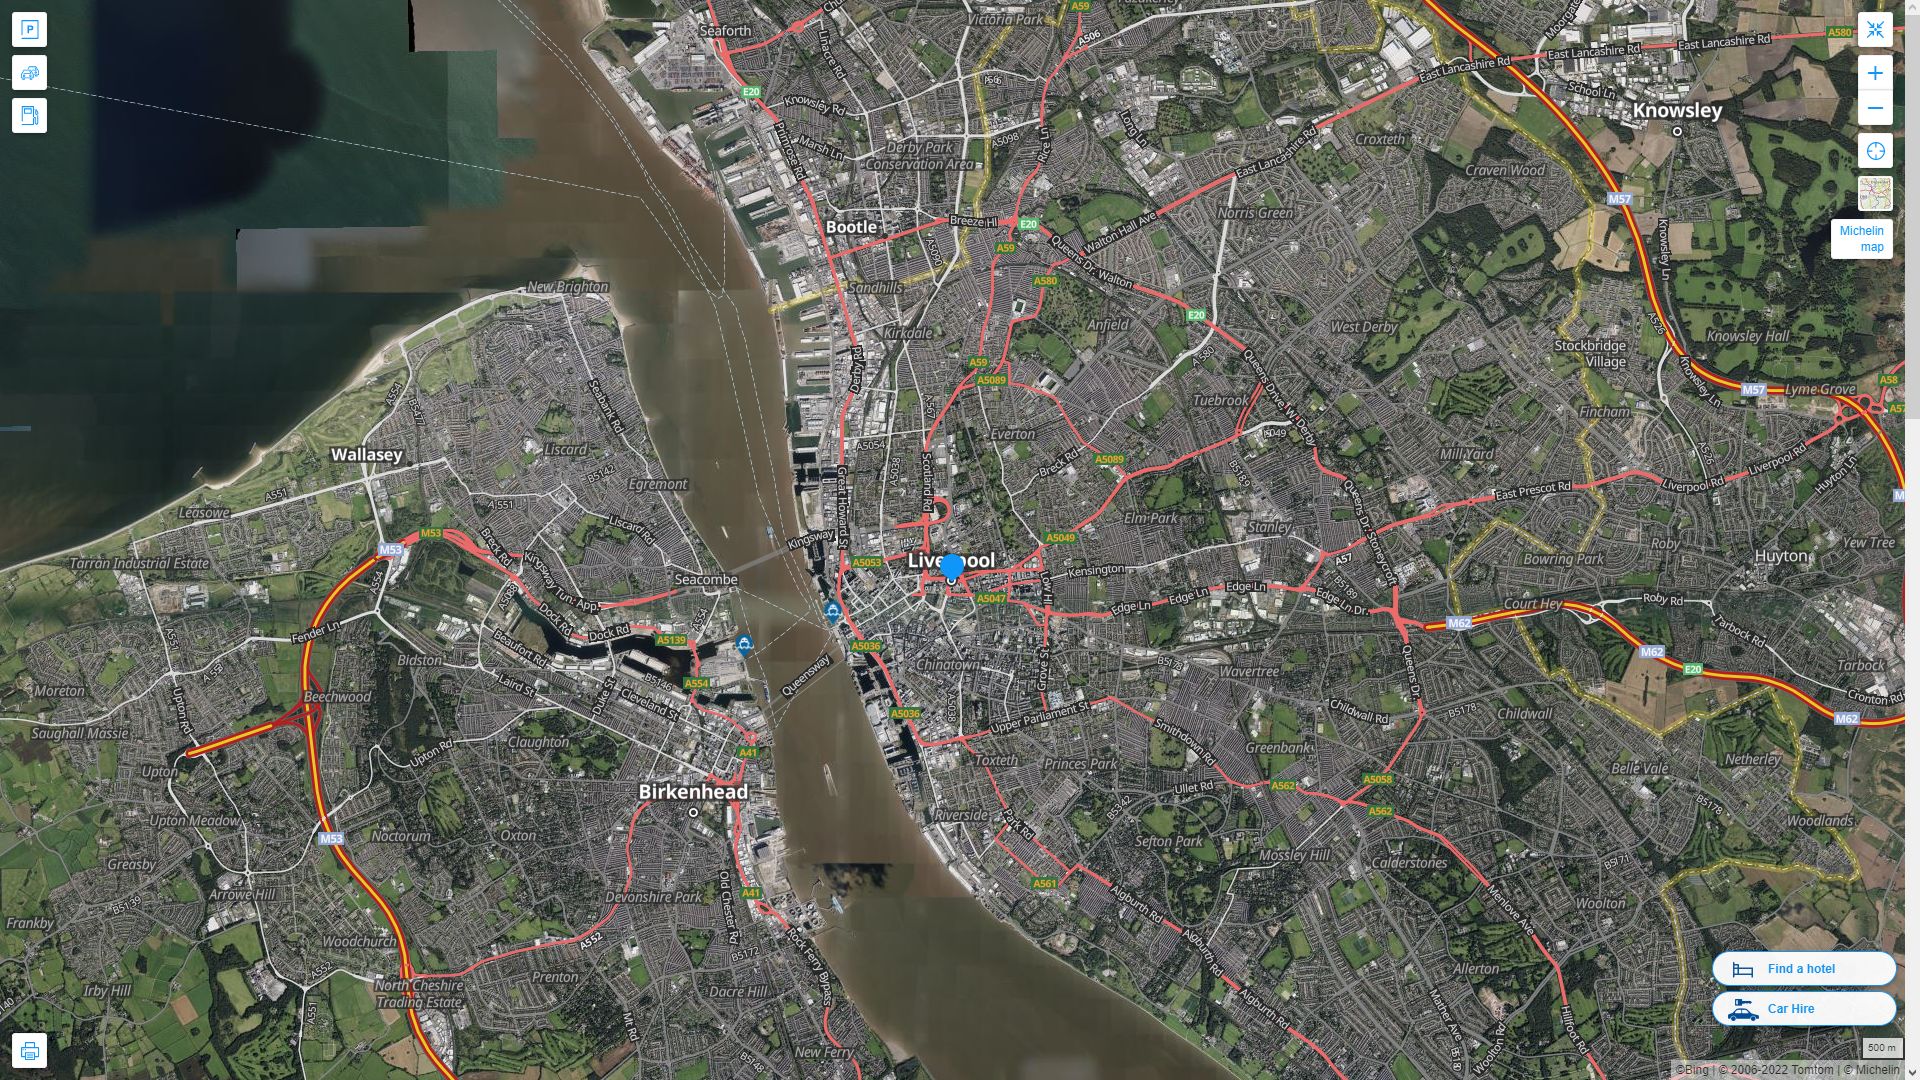 Liverpool Royaume Uni Autoroute et carte routiere avec vue satellite